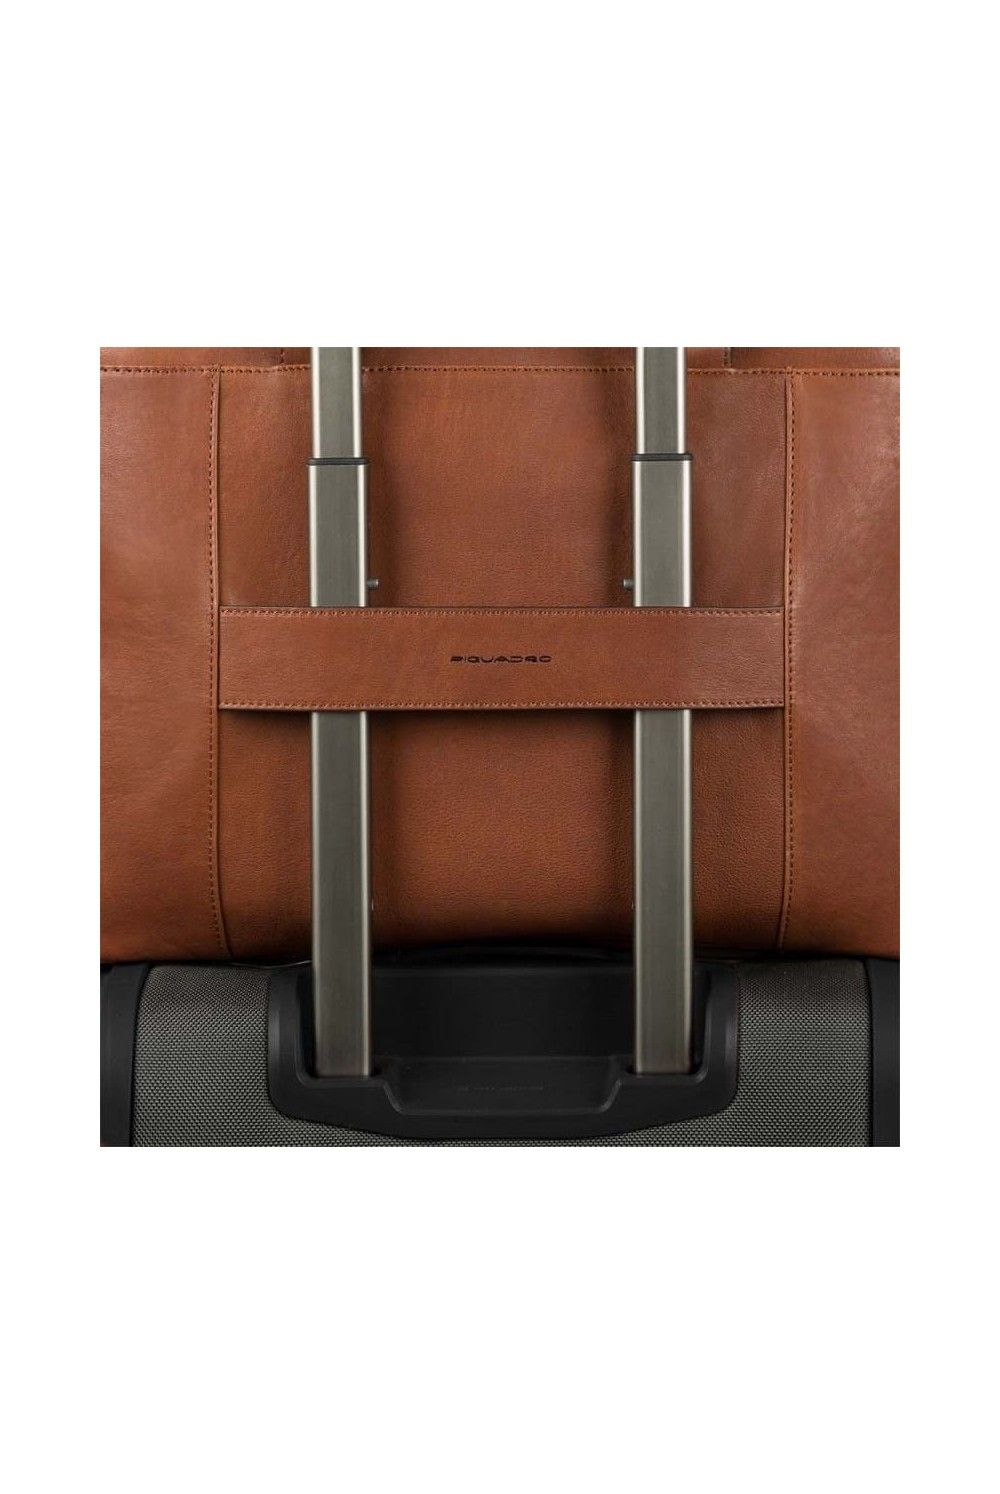 Narrow, expandable laptop bag Piquadro Black Square 15.6 inches